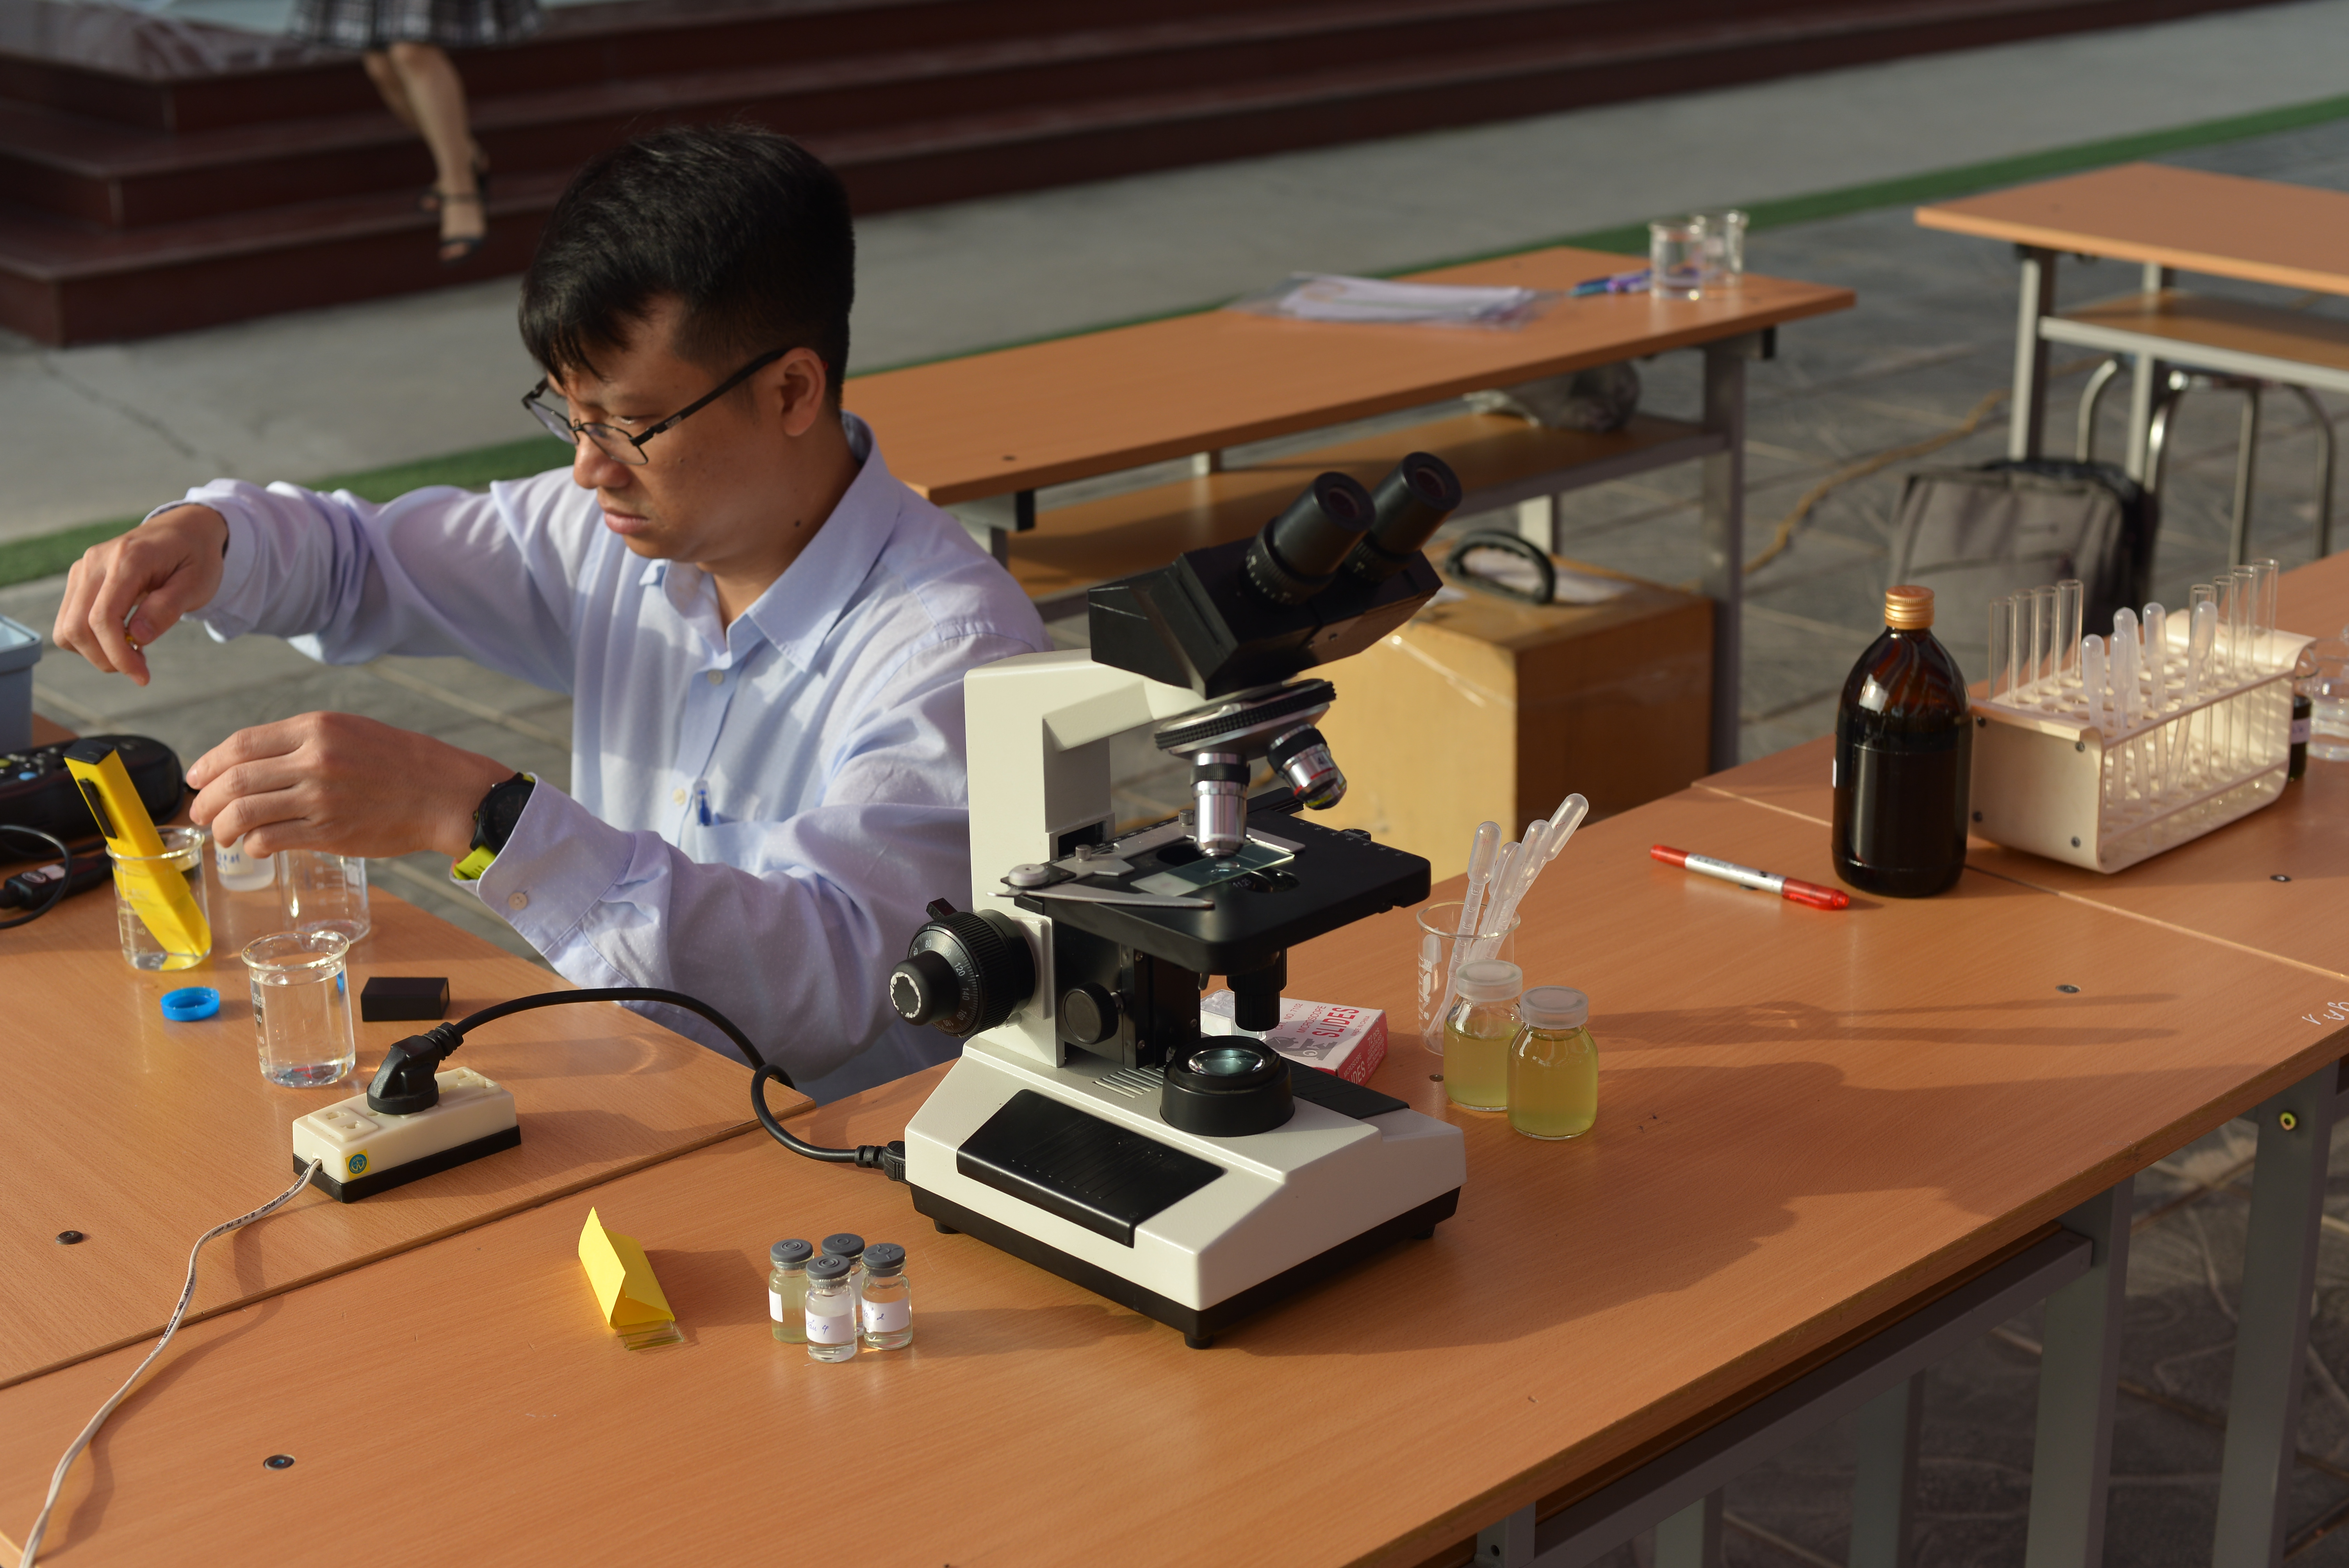 TS. Dương Tuấn Hưng (Viện Hóa học) chuẩn bị dụng cụ cho các bạn học sinh tham gia ngày hội 